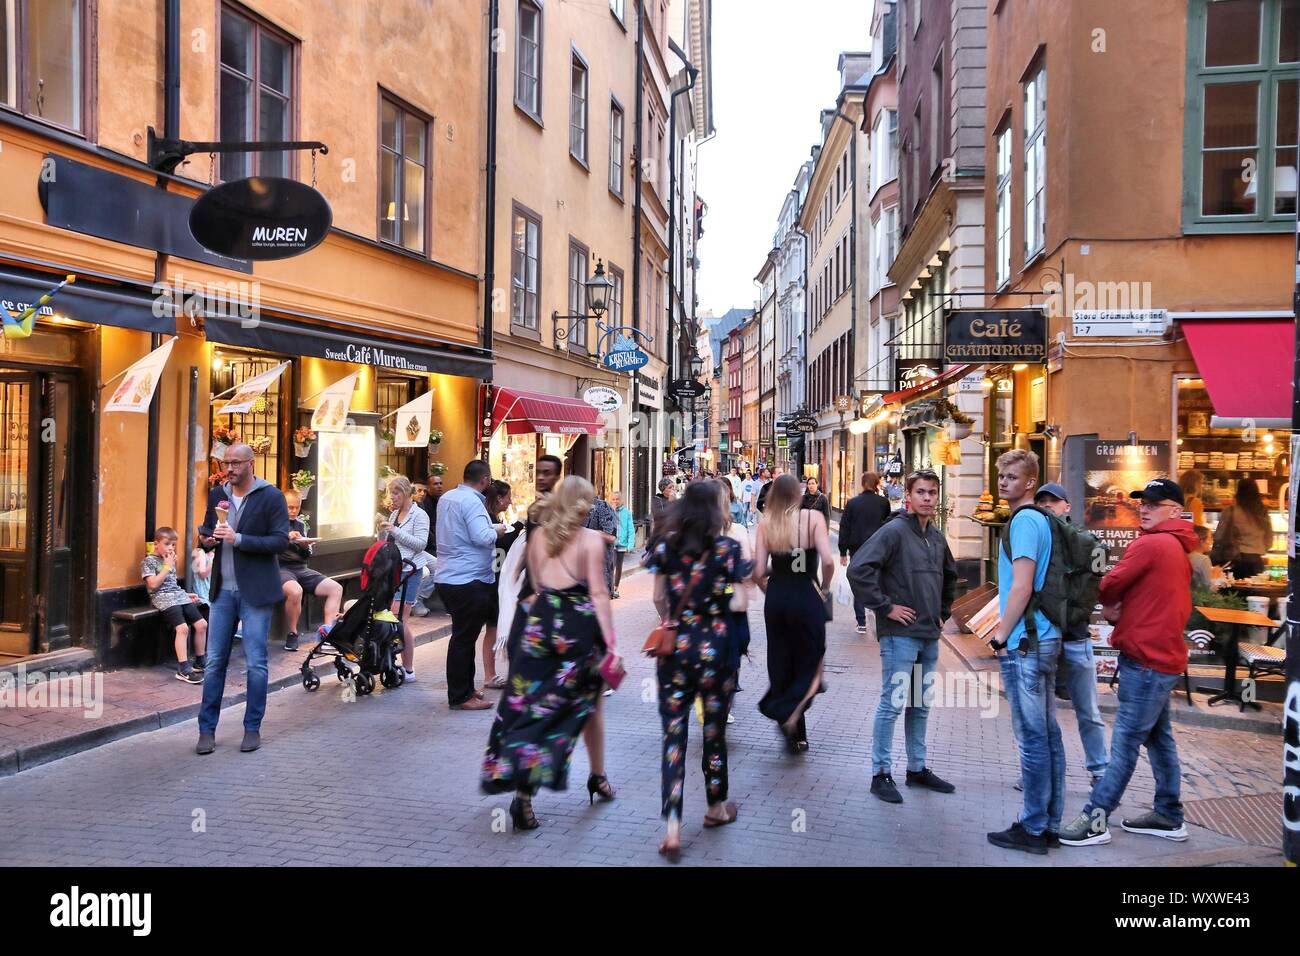 STOCKHOLM, Schweden - 22. AUGUST 2018: die Menschen in der Gamla Stan (Altstadt) in Stockholm, Schweden. Stockholm ist die Hauptstadt und bevölkerungsreichste Bereich i Stockfoto